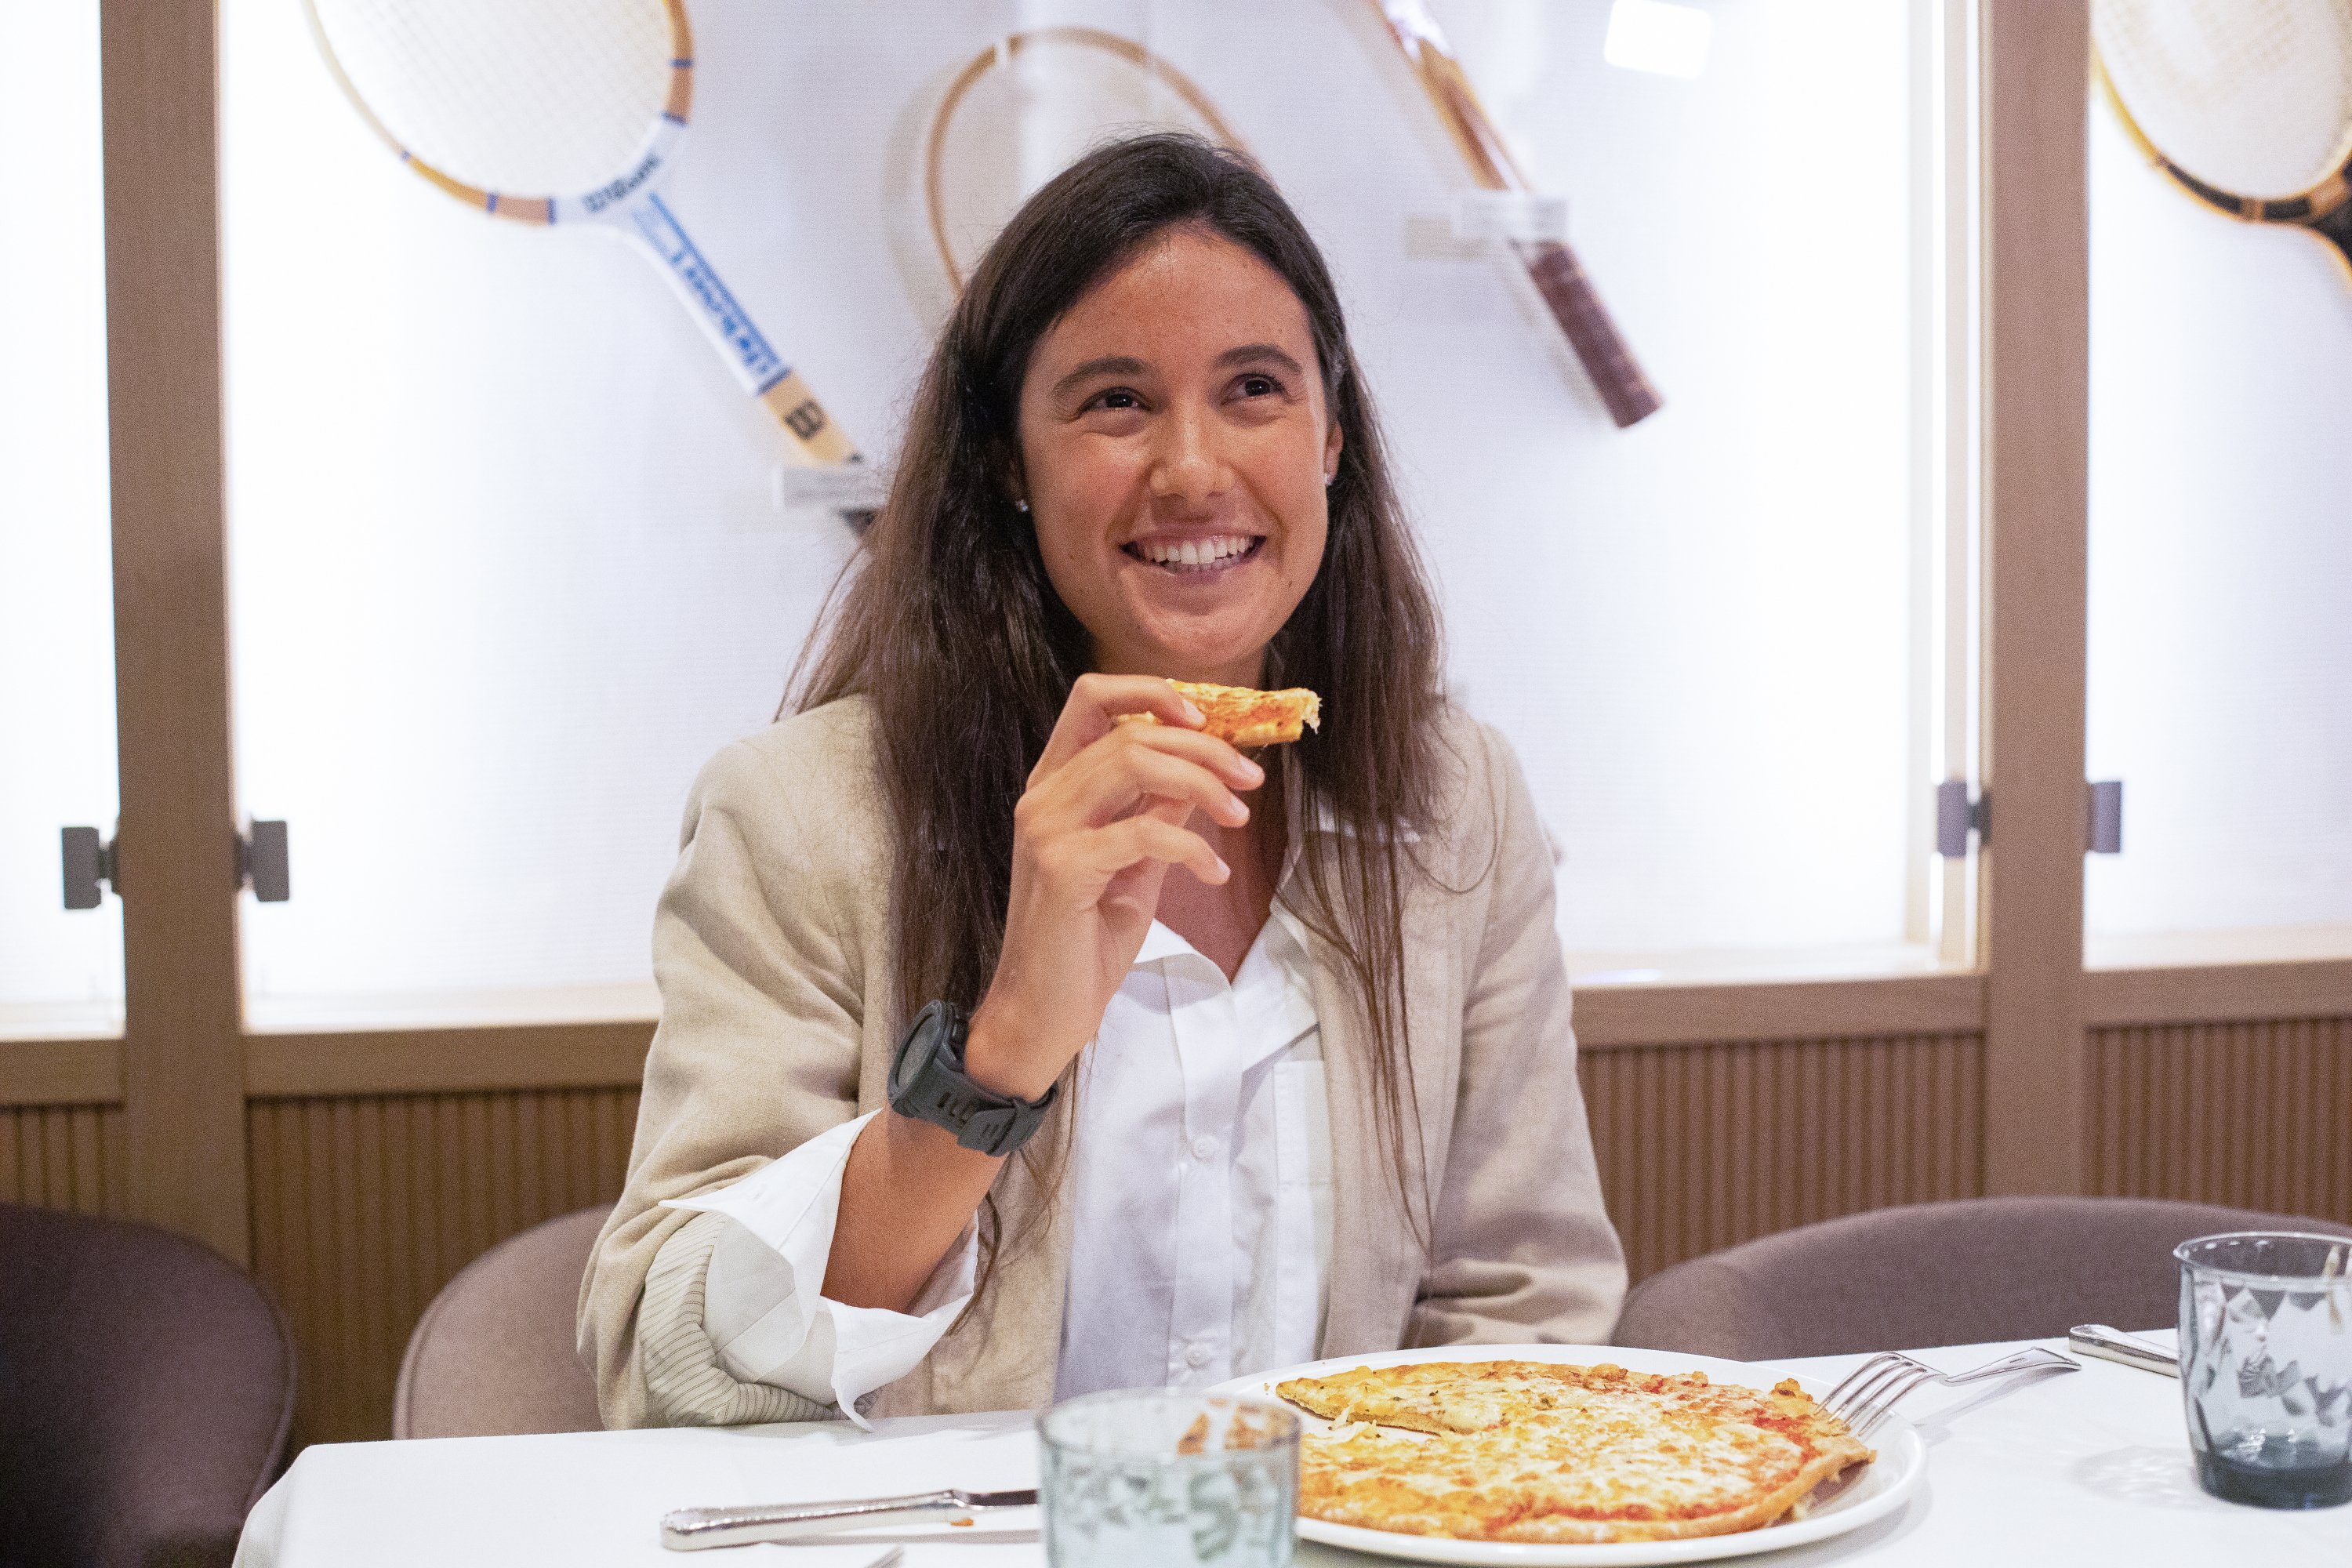 La neboda d'Arantxa Sánchez-Vicario triomfa com a empresària d'alimentació